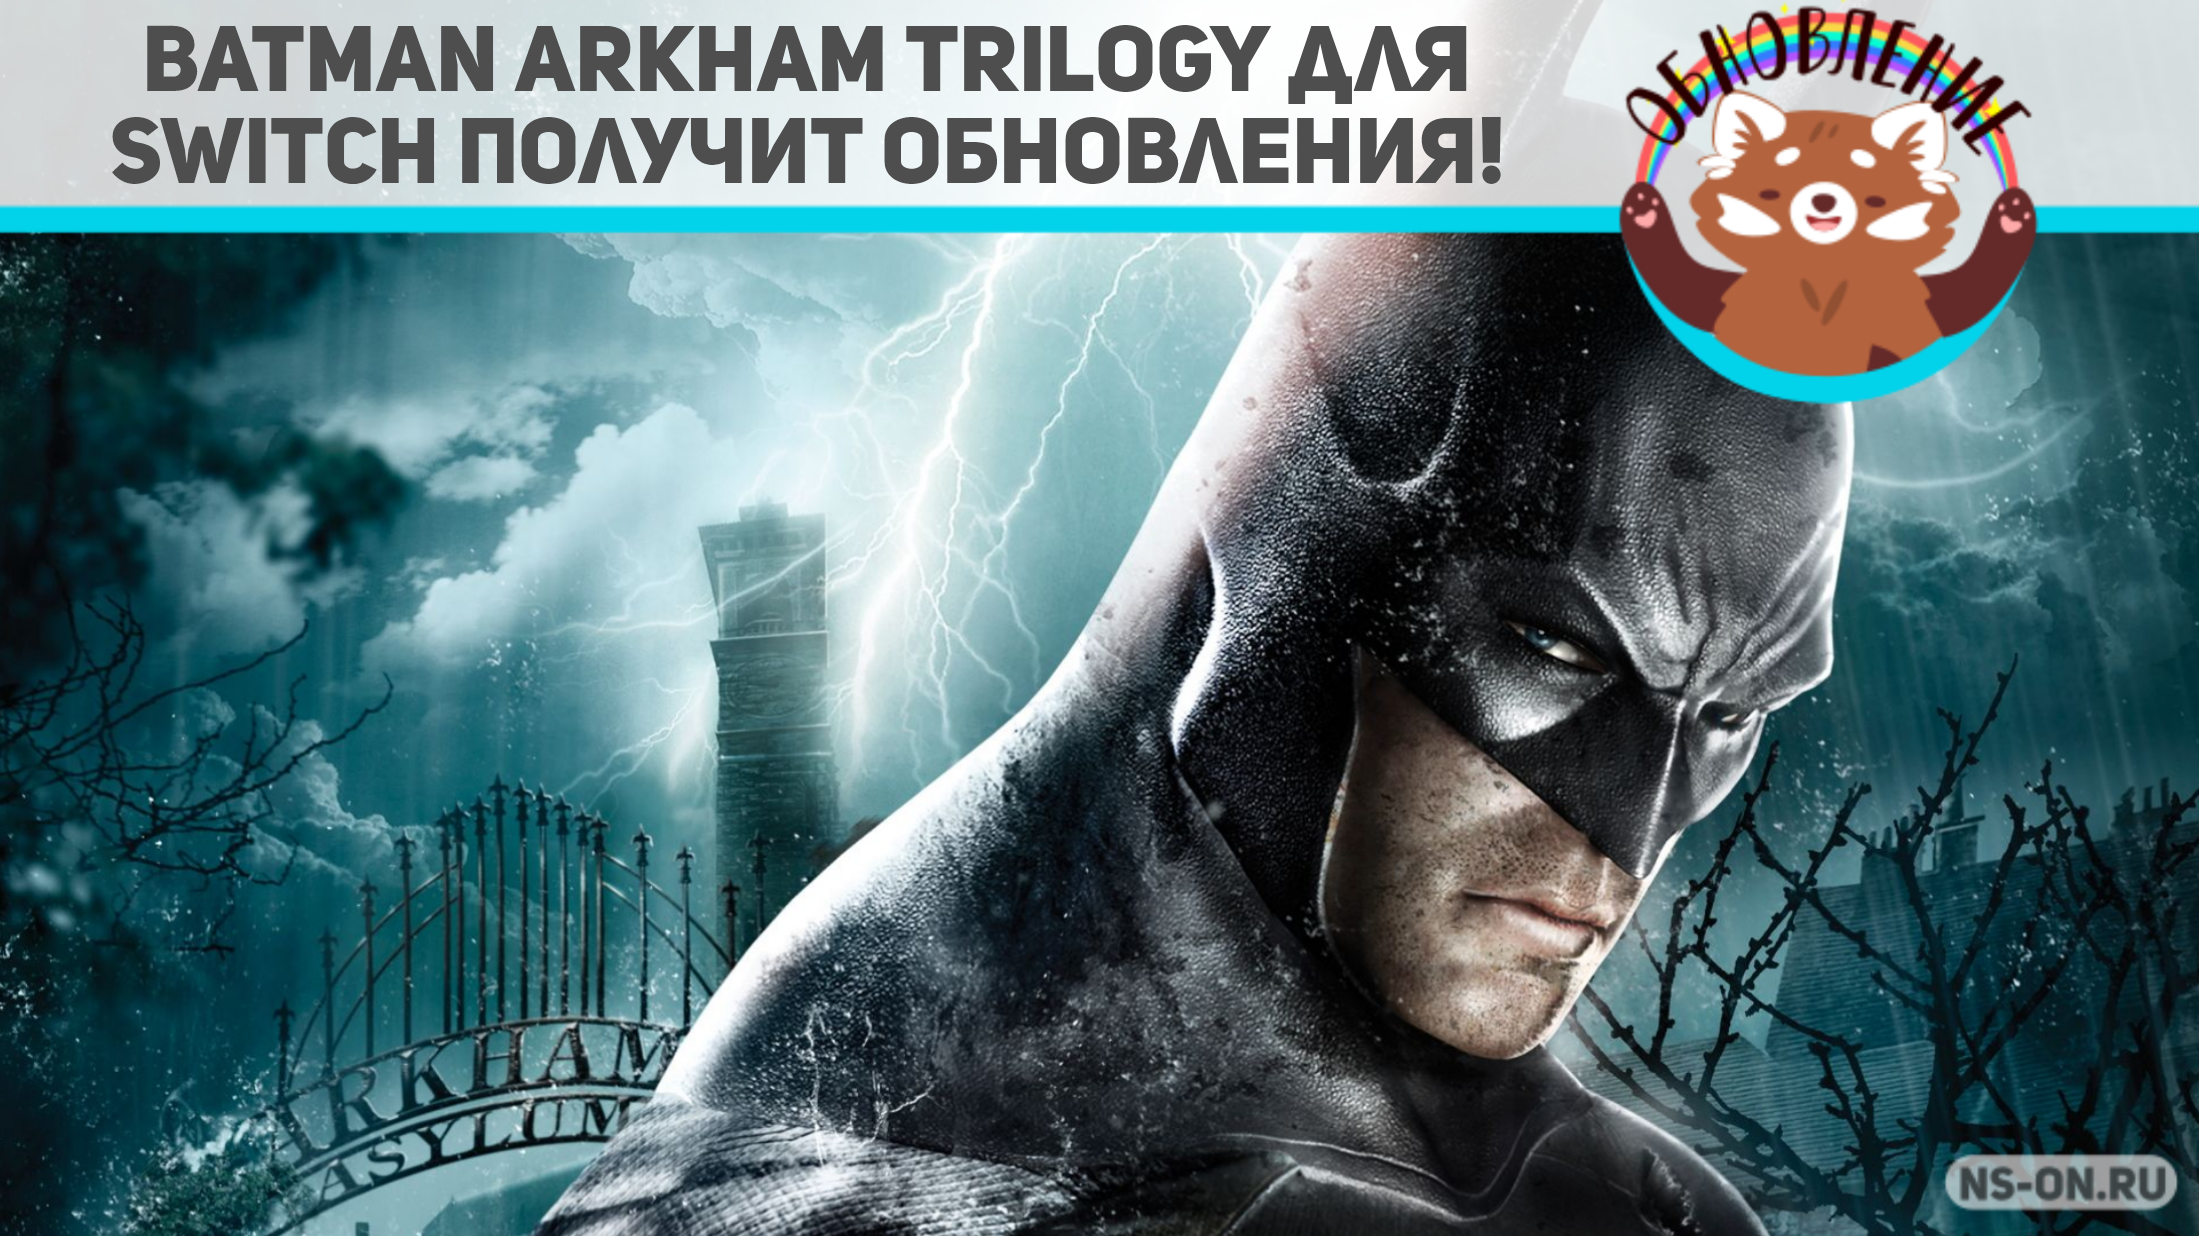 Вы сейчас просматриваете Batman Arkham Trilogy получит обновления! Для Asylum уже вышел патч!